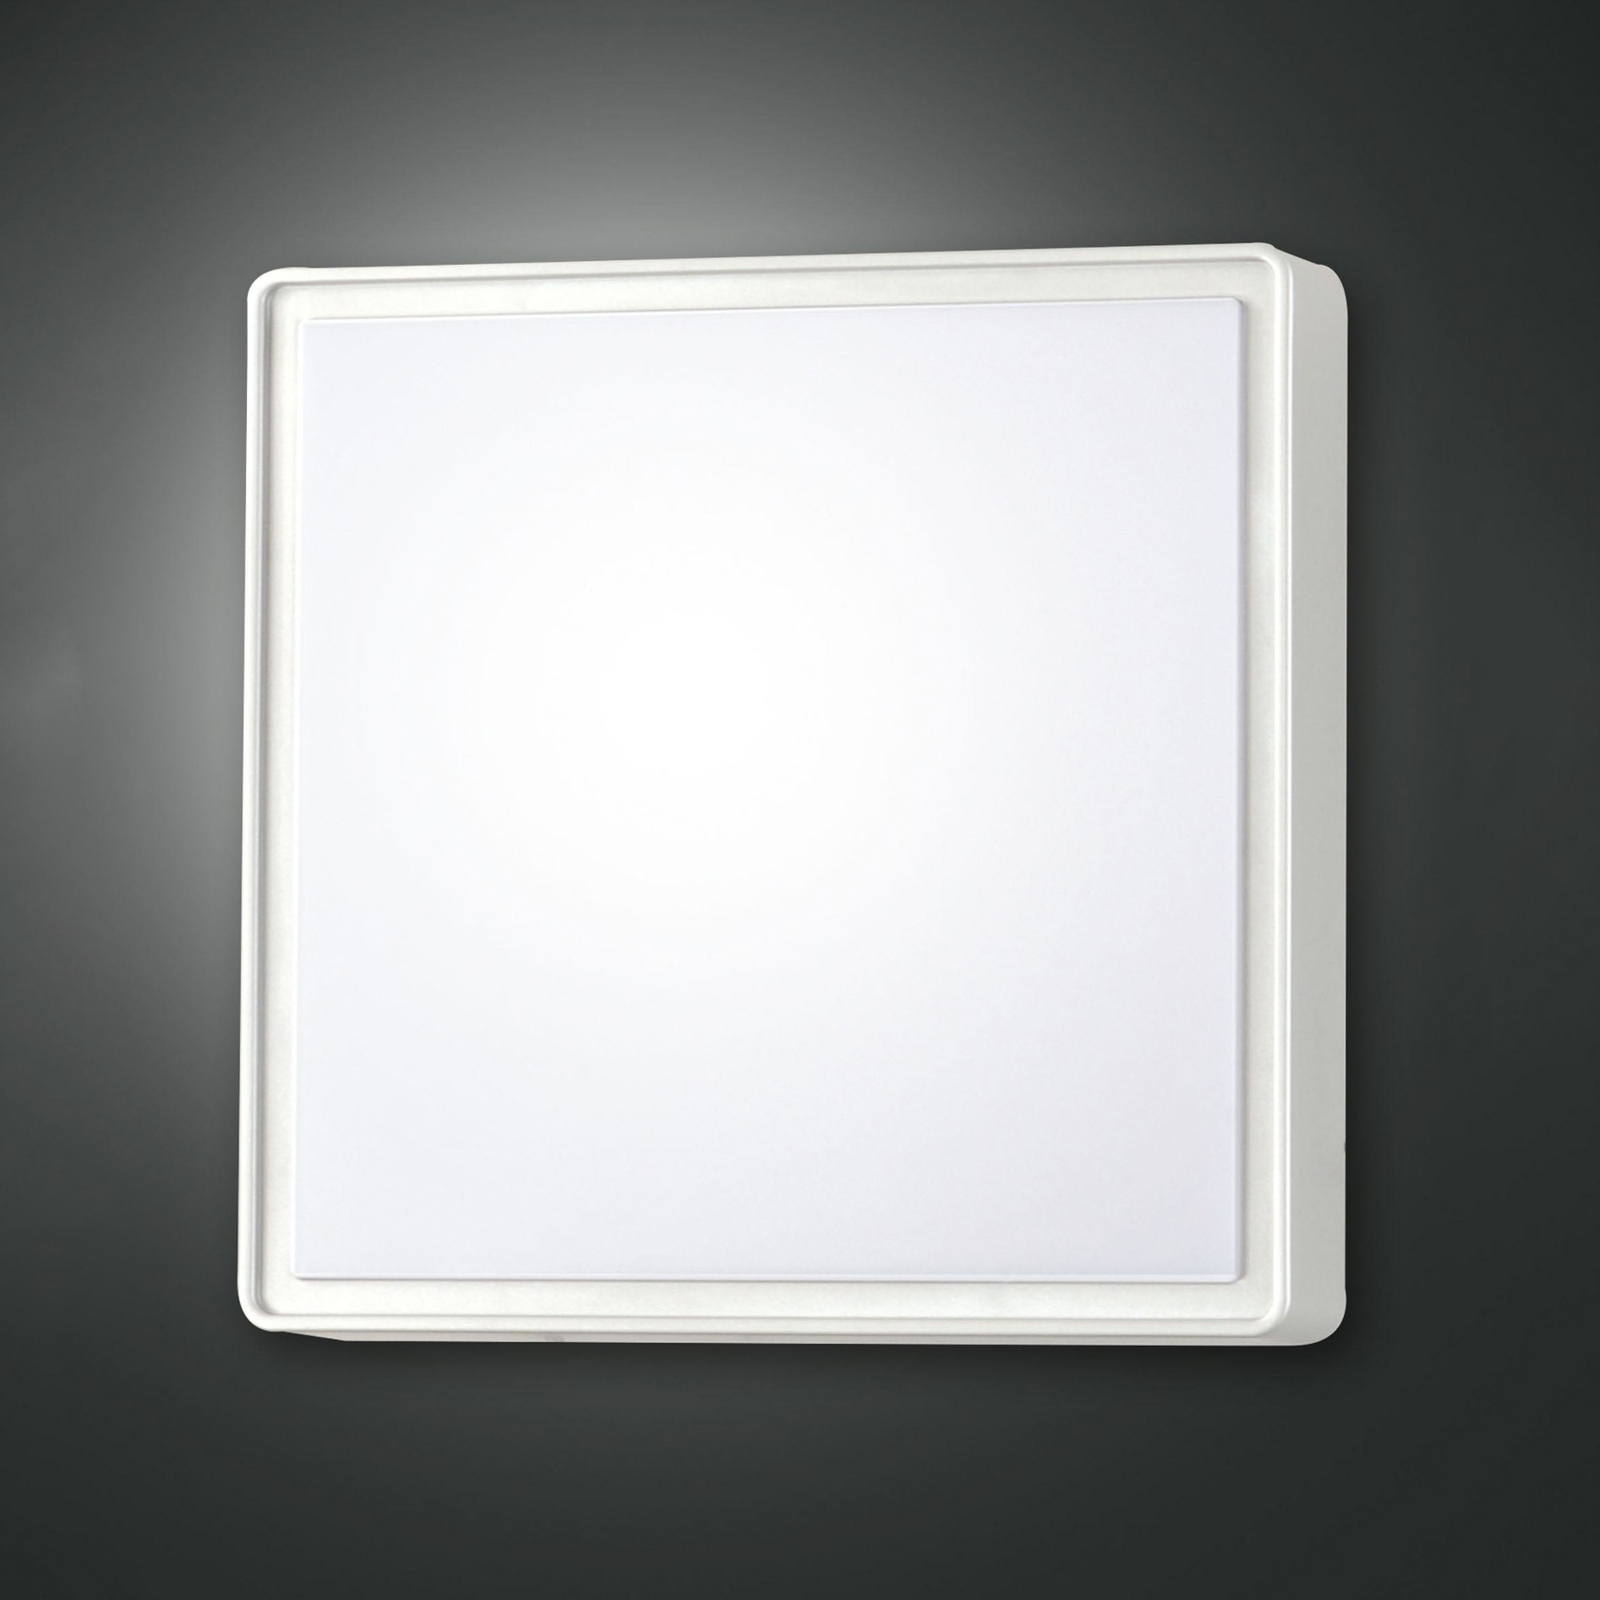 Oban LED wall light, 30 cm x 30 cm, white, IP65